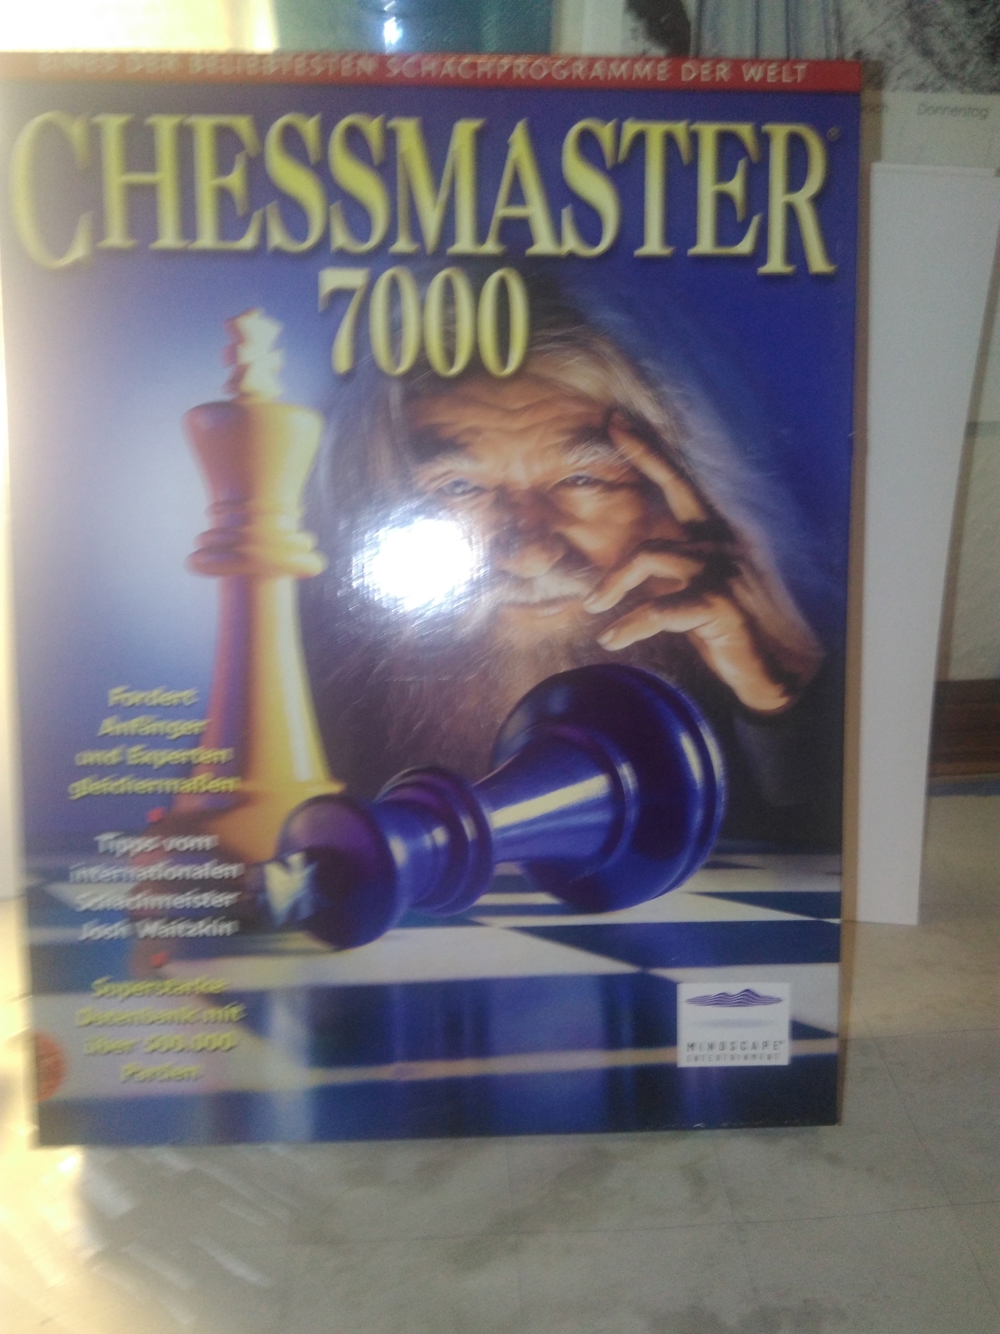 ChessMaster 7000 (PC, 1999) Schach